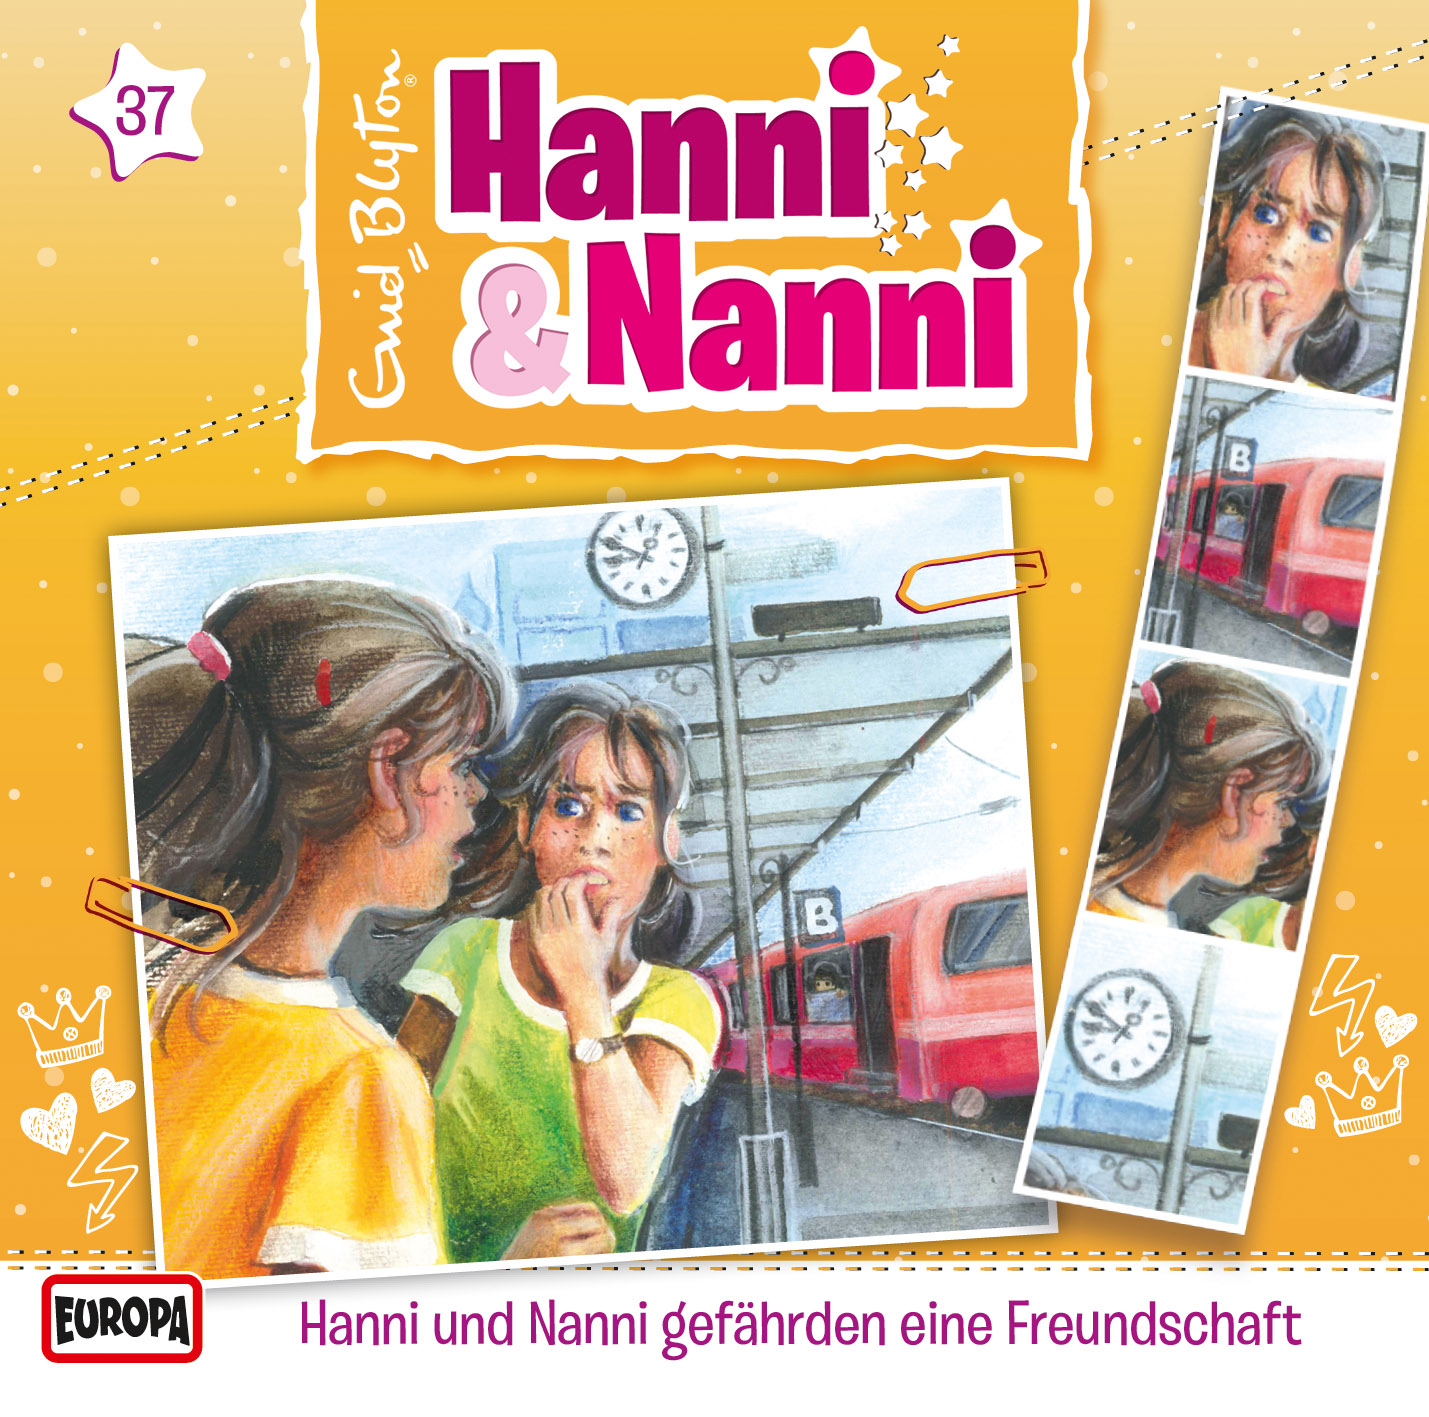 Hanni und Nanni: Hanni & Nanni gefährden eine Freundschaft